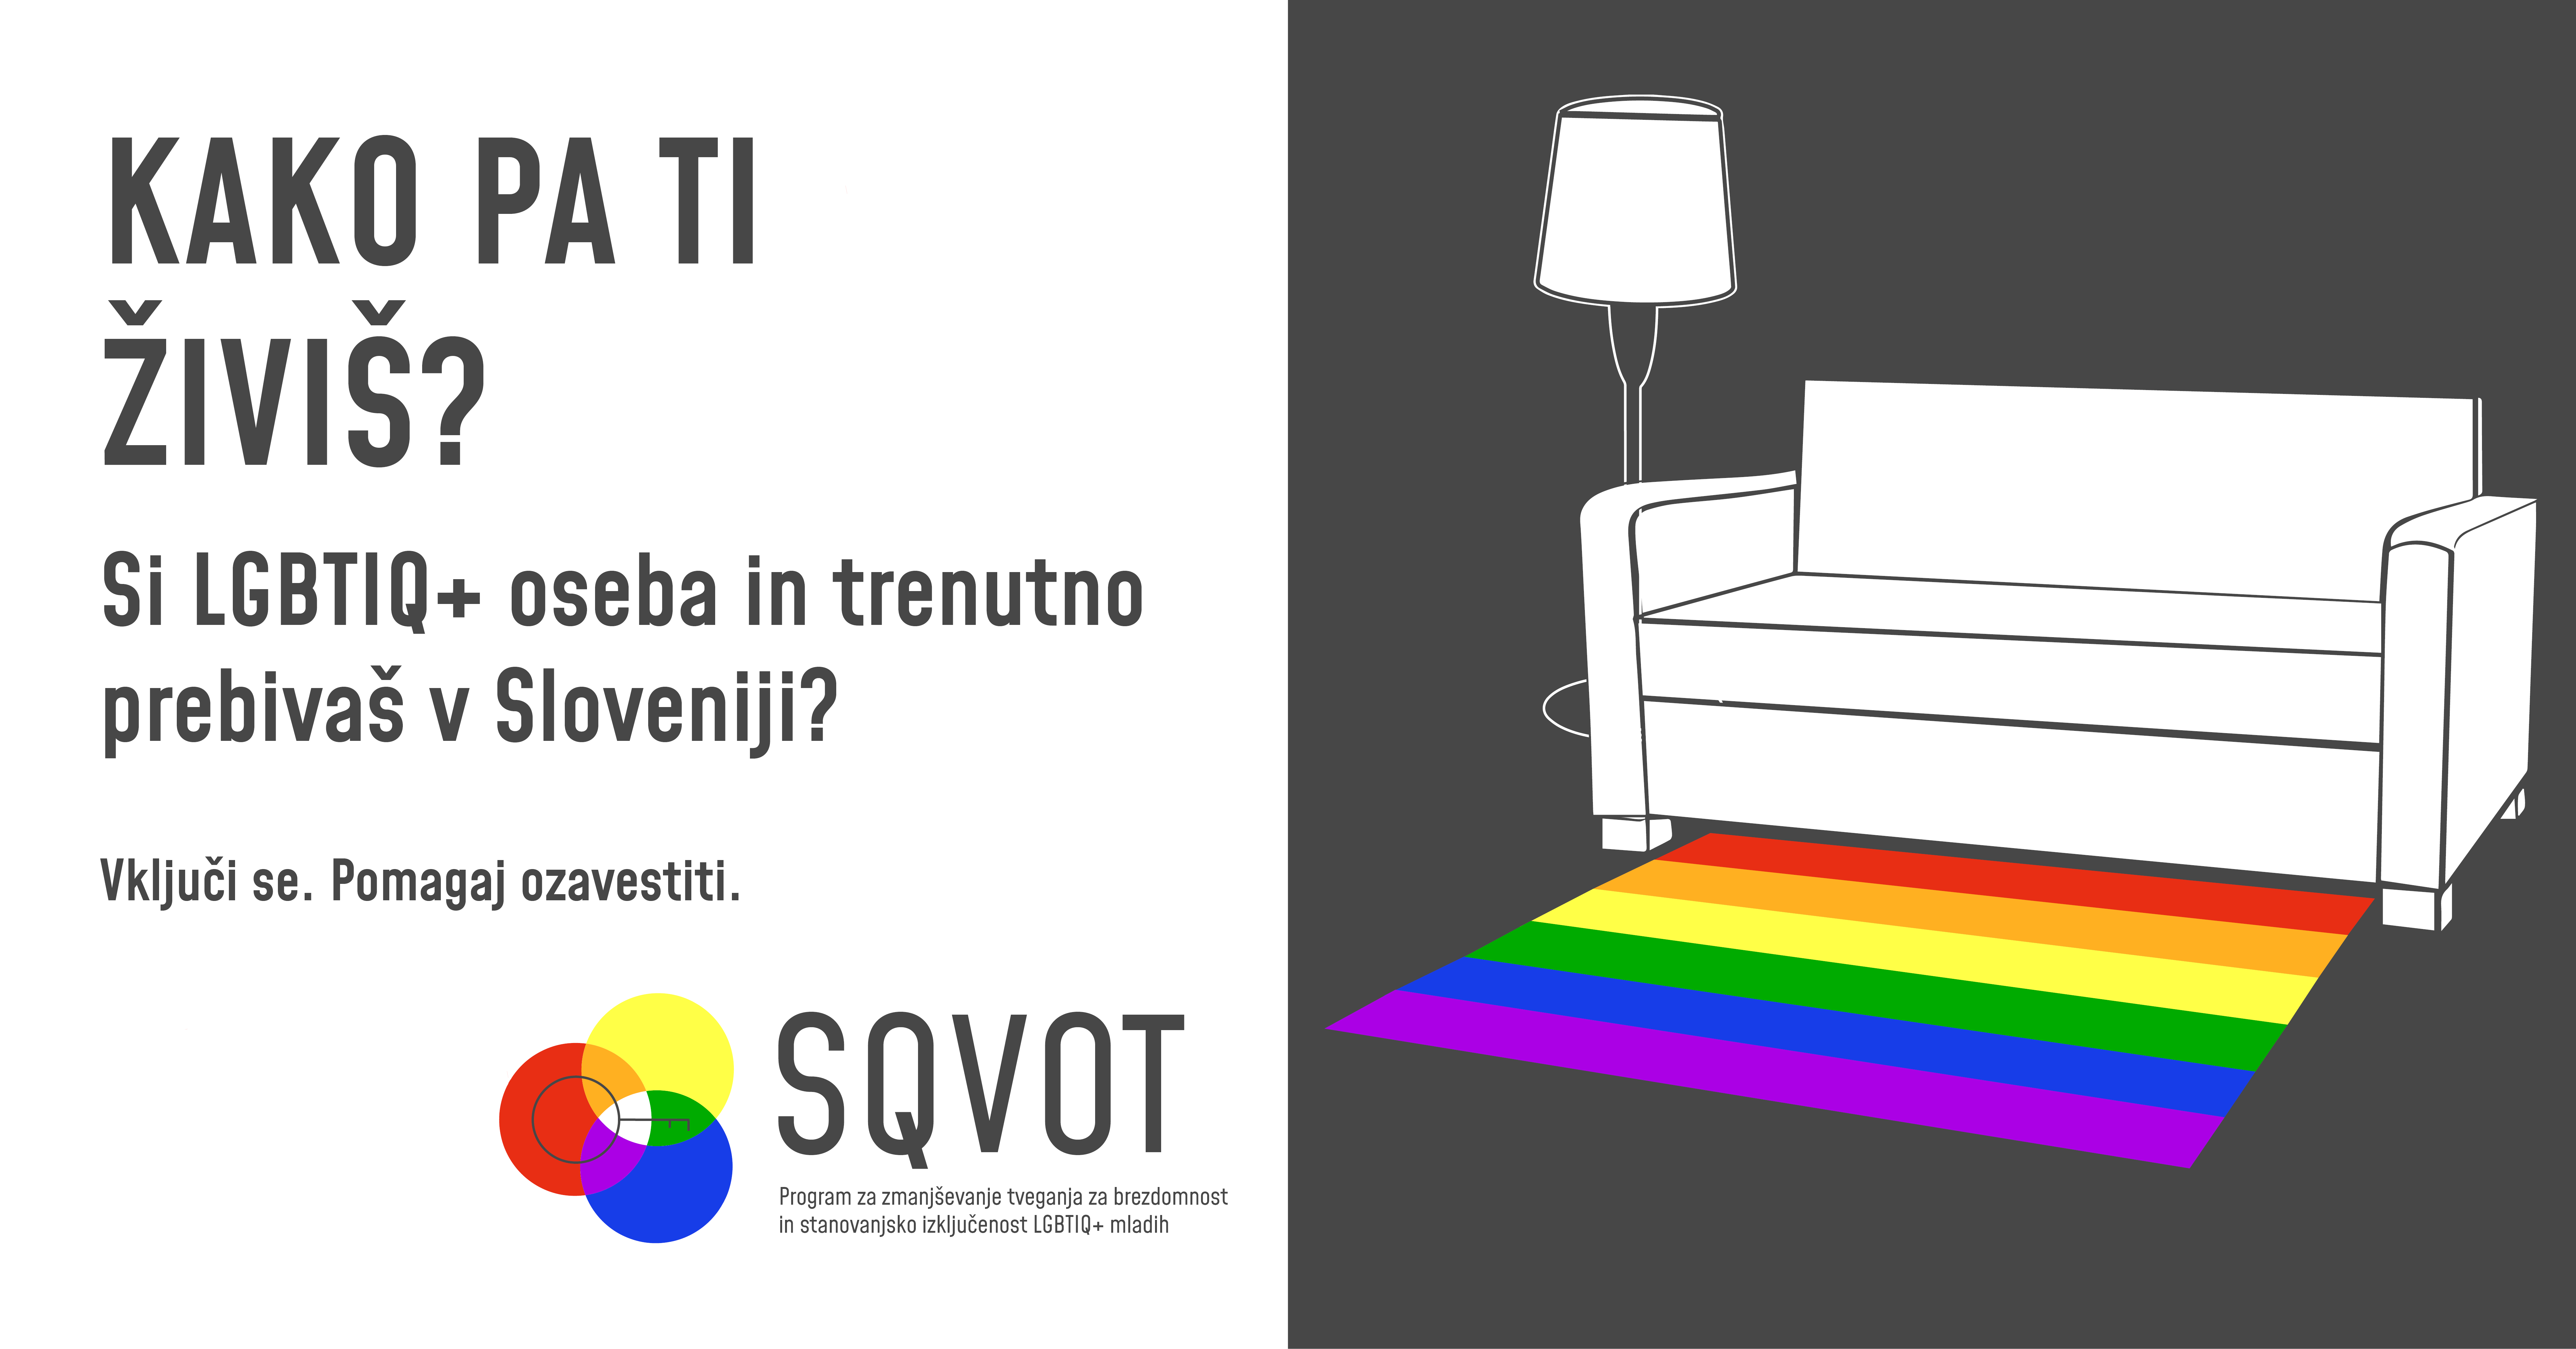 Sqvot – Program za zmanjševanje tveganja za brezdomnost in stanovanjsko izključenost LGBTIQ+* mladih